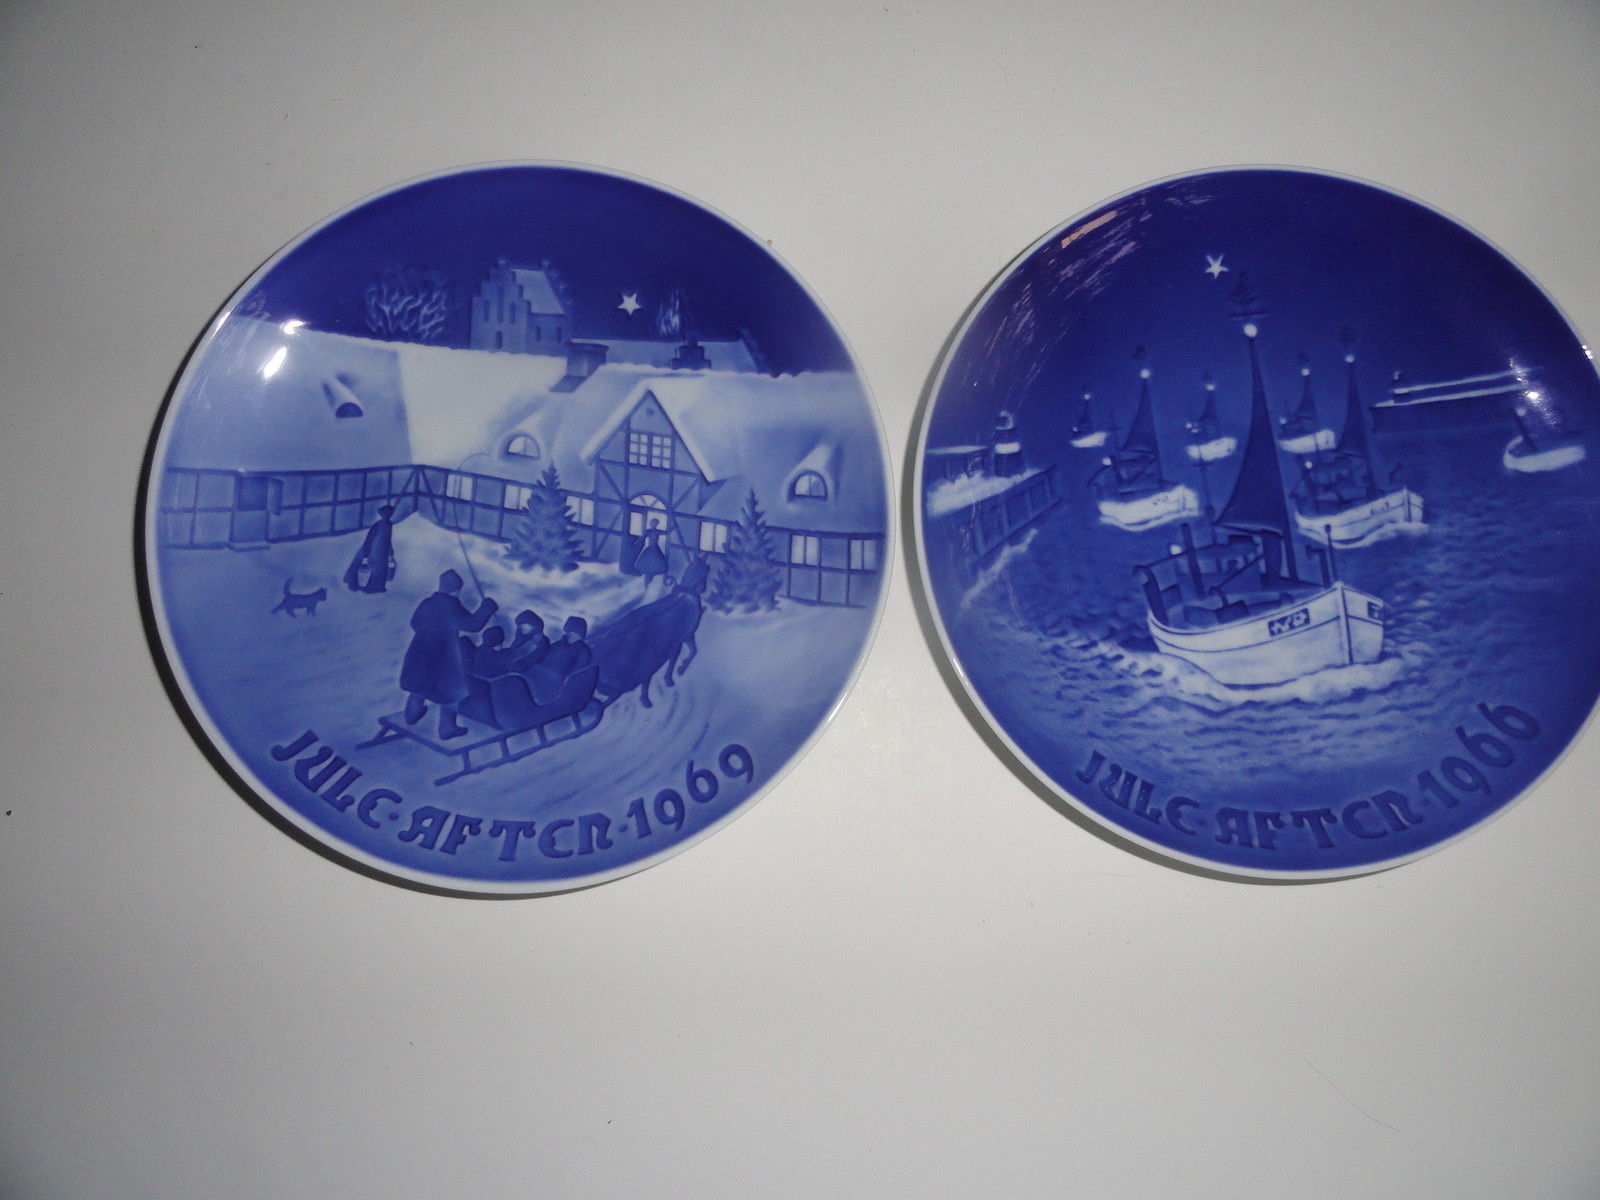 B&G Christmas Plates Lot Blue & White Denmark Porcelain 1969 1966 - $9.99